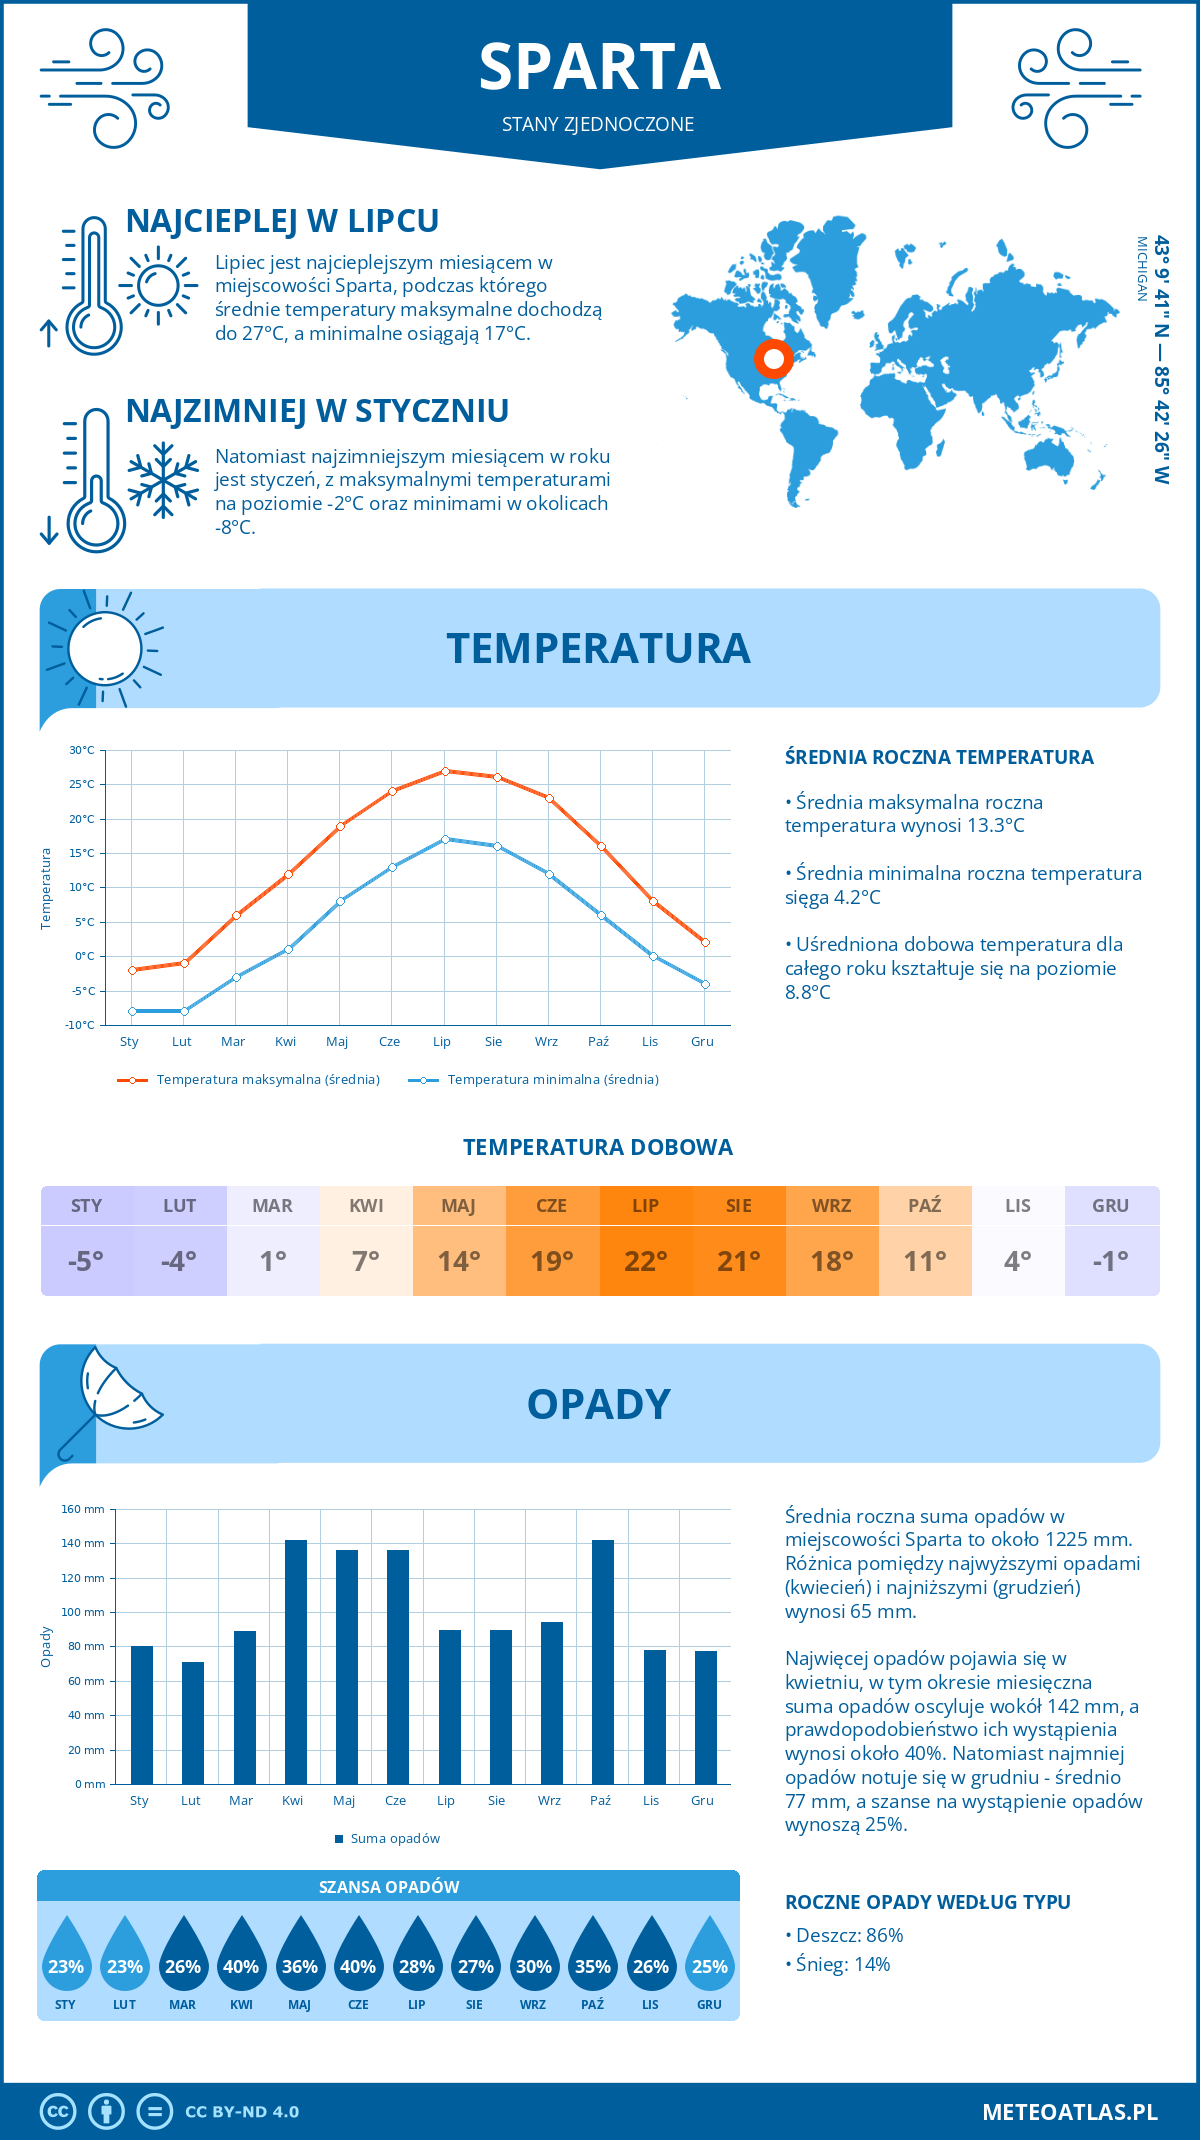 Pogoda Sparta (Stany Zjednoczone). Temperatura oraz opady.